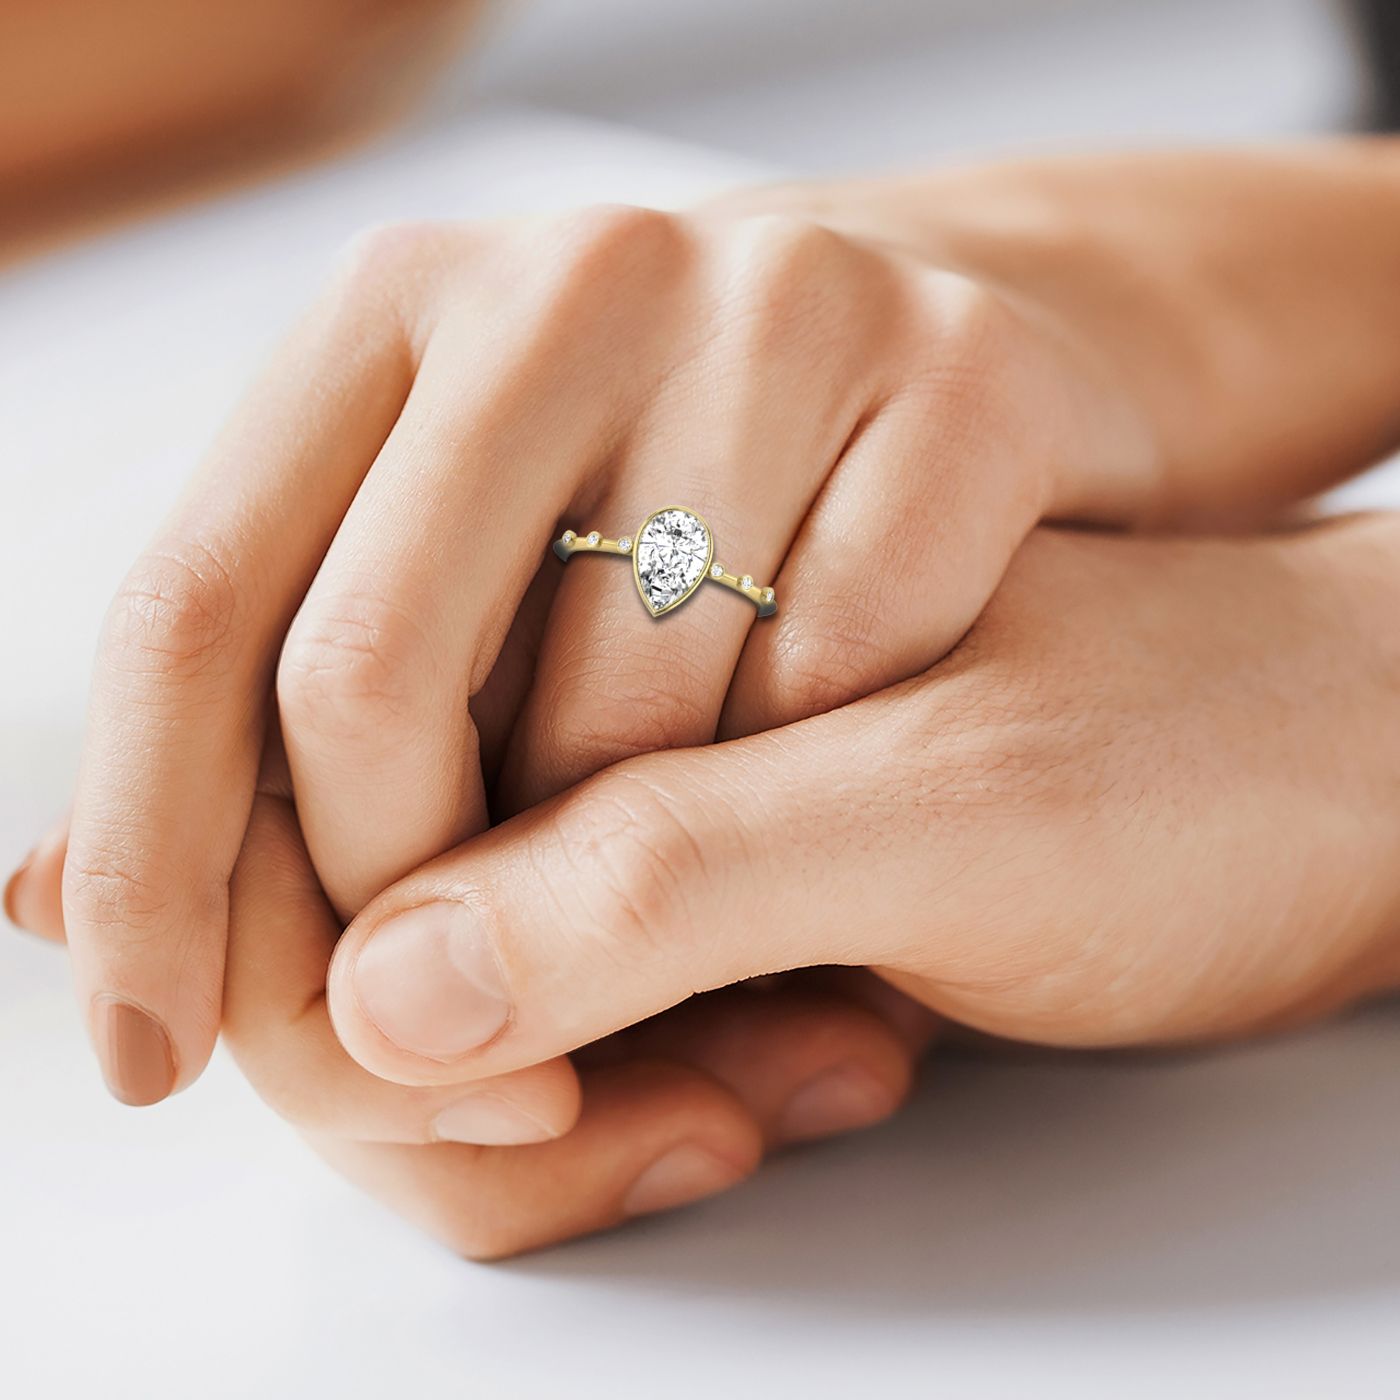 18ky Bezel Set Pear Engagement Ring With 6 Bezel Set Round Diamonds On Shank